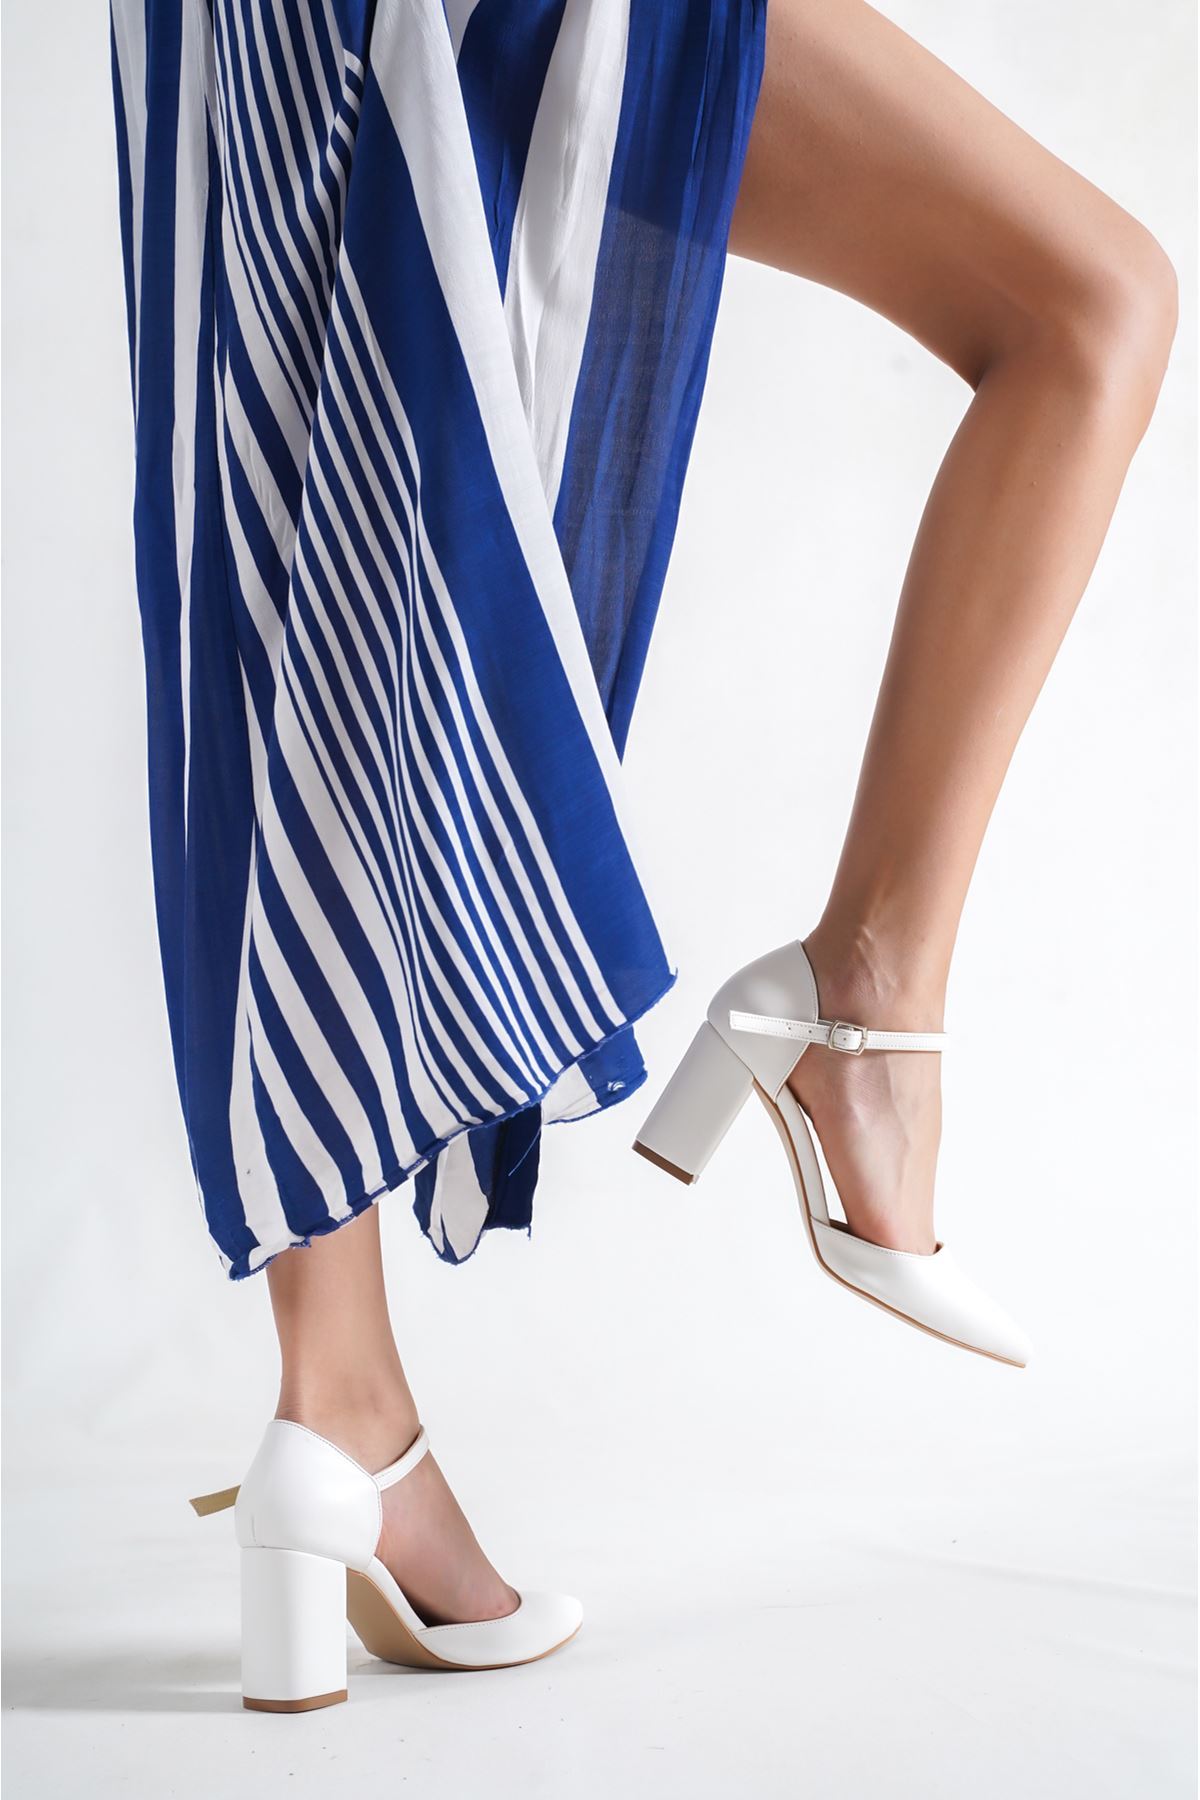 Yaris Beyaz Cilt Kısa Topuklu Kadın Ayakkabı